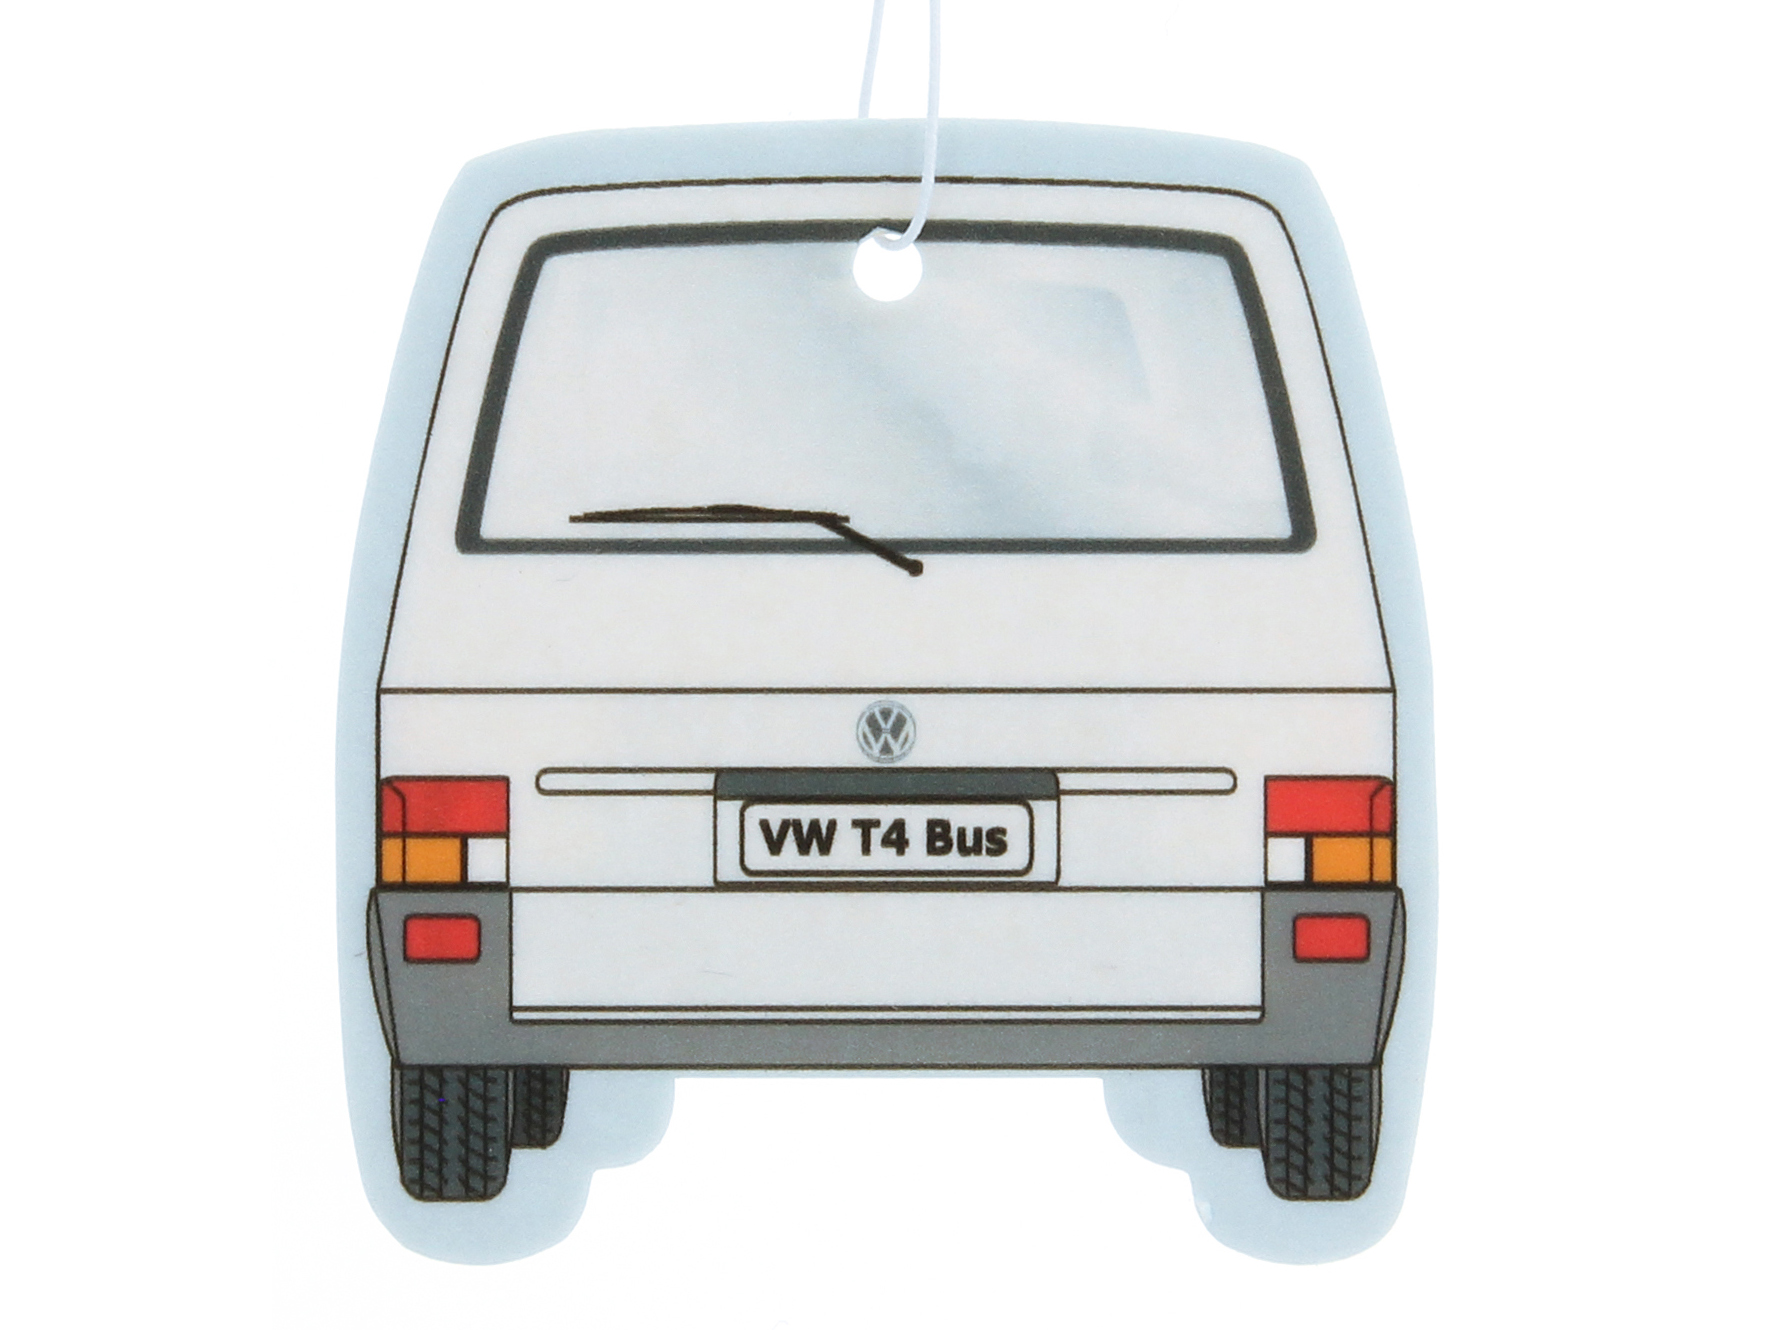 Ambientador frontal VW T4 Bus